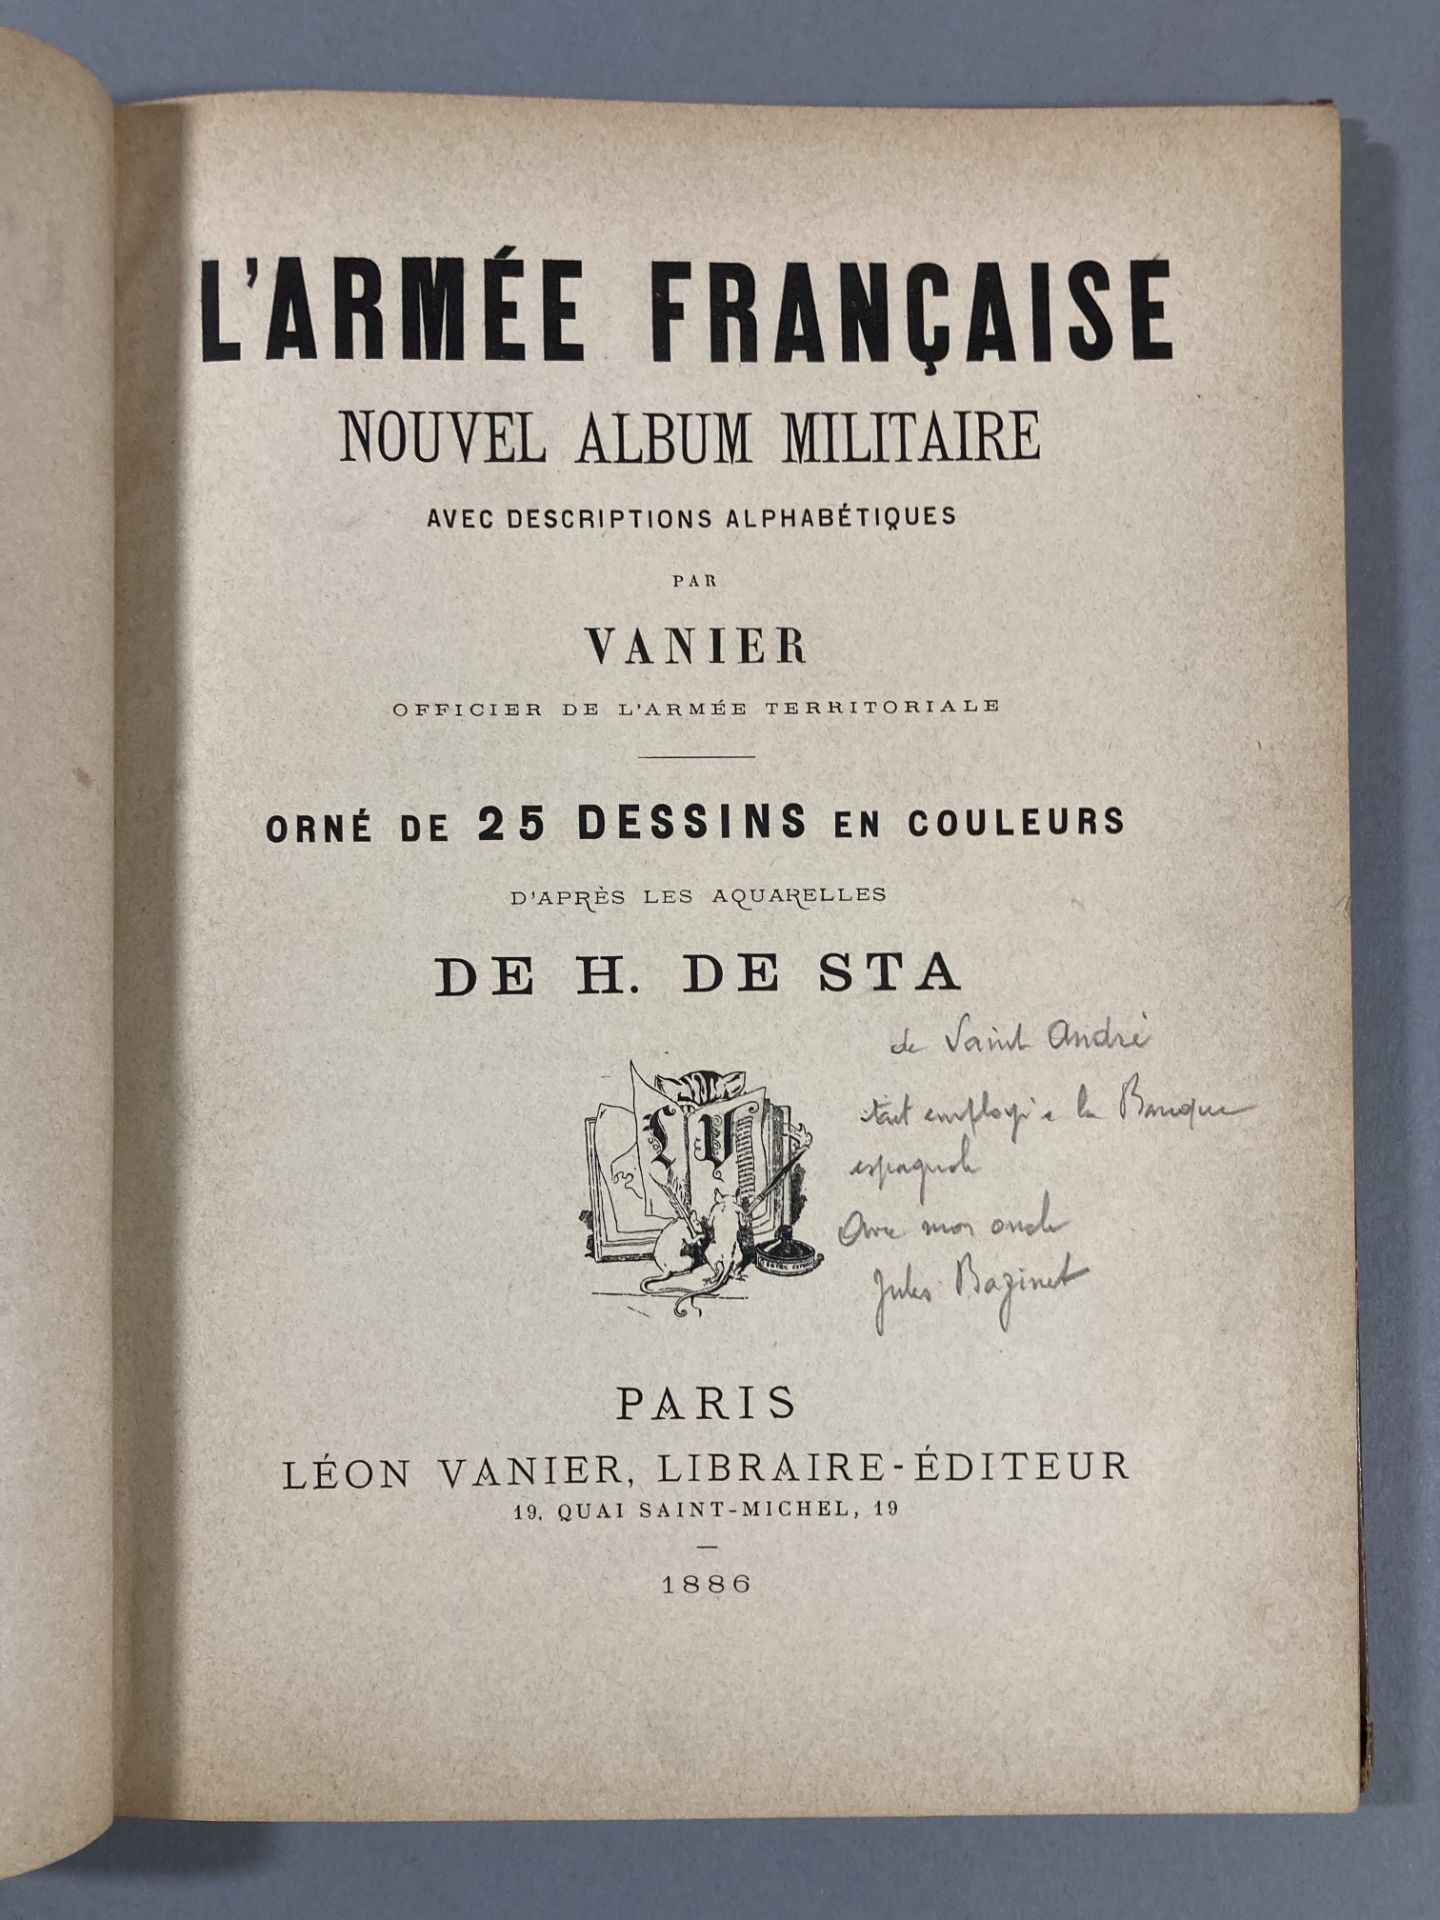 VANIER et H de STA. L’armée française » Abécédaire illustrée. Librairie Léon Vanier- Paris. 1886. - Bild 3 aus 8